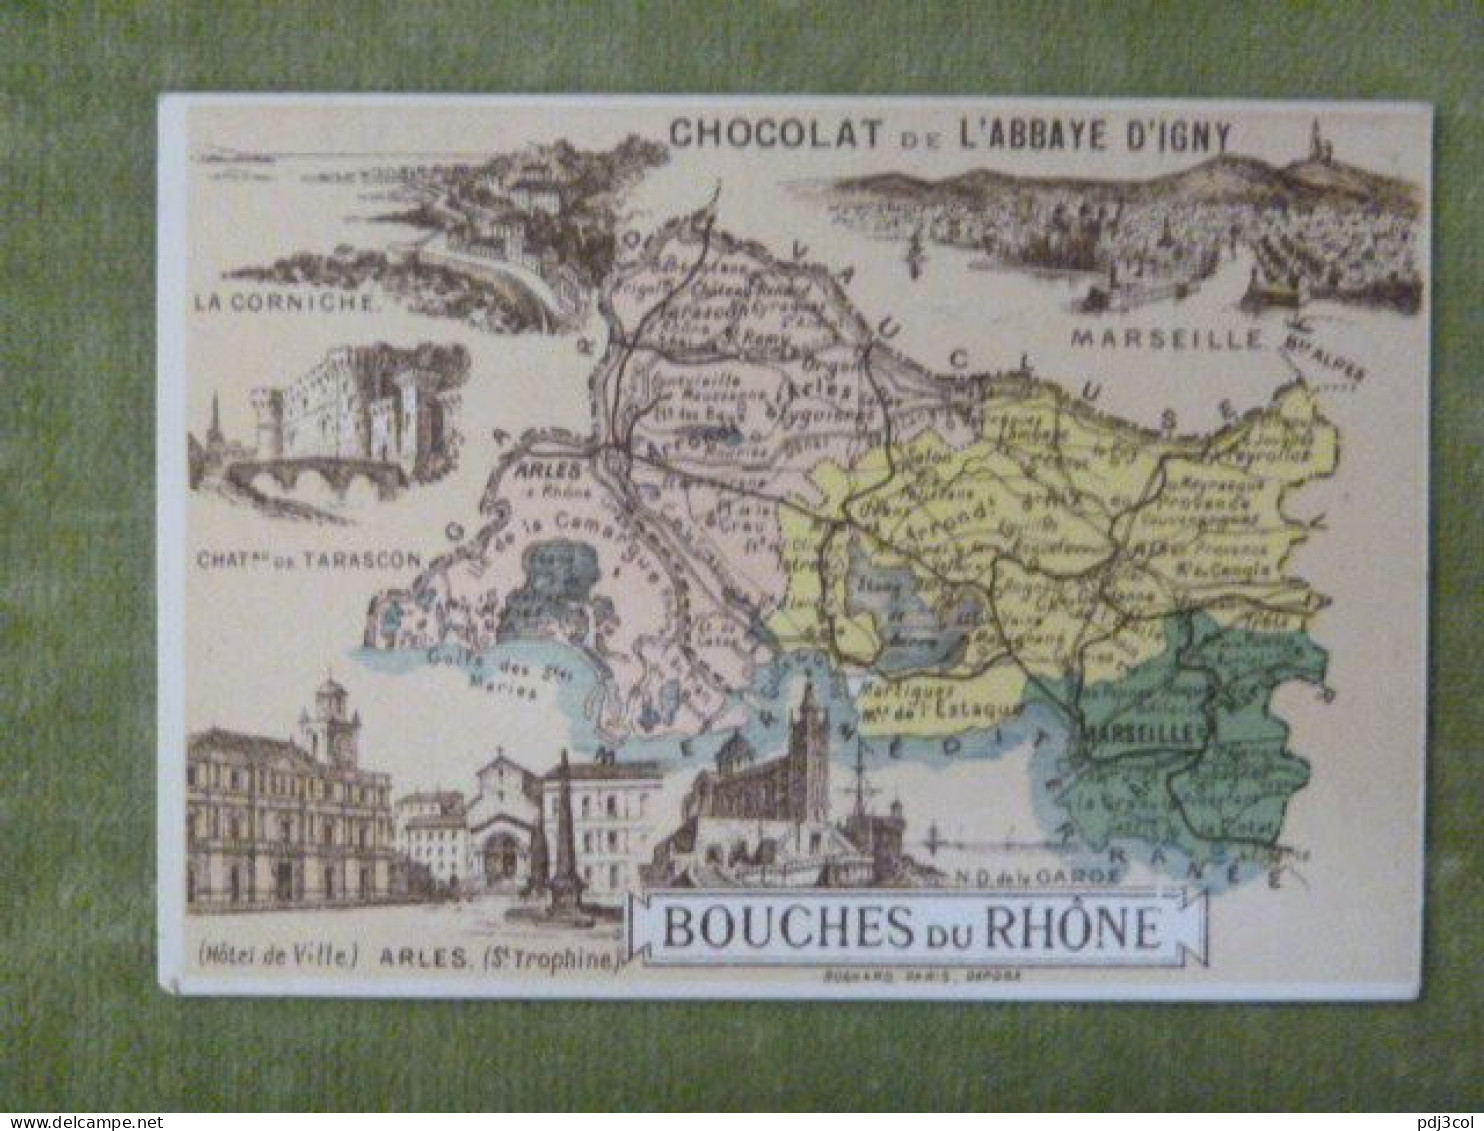 Lot de 4 chromos - Départements - Bouches du Rhône, Gironde, Haute Loire, Seine - Pub chocolat de l'abbaye d'Igny